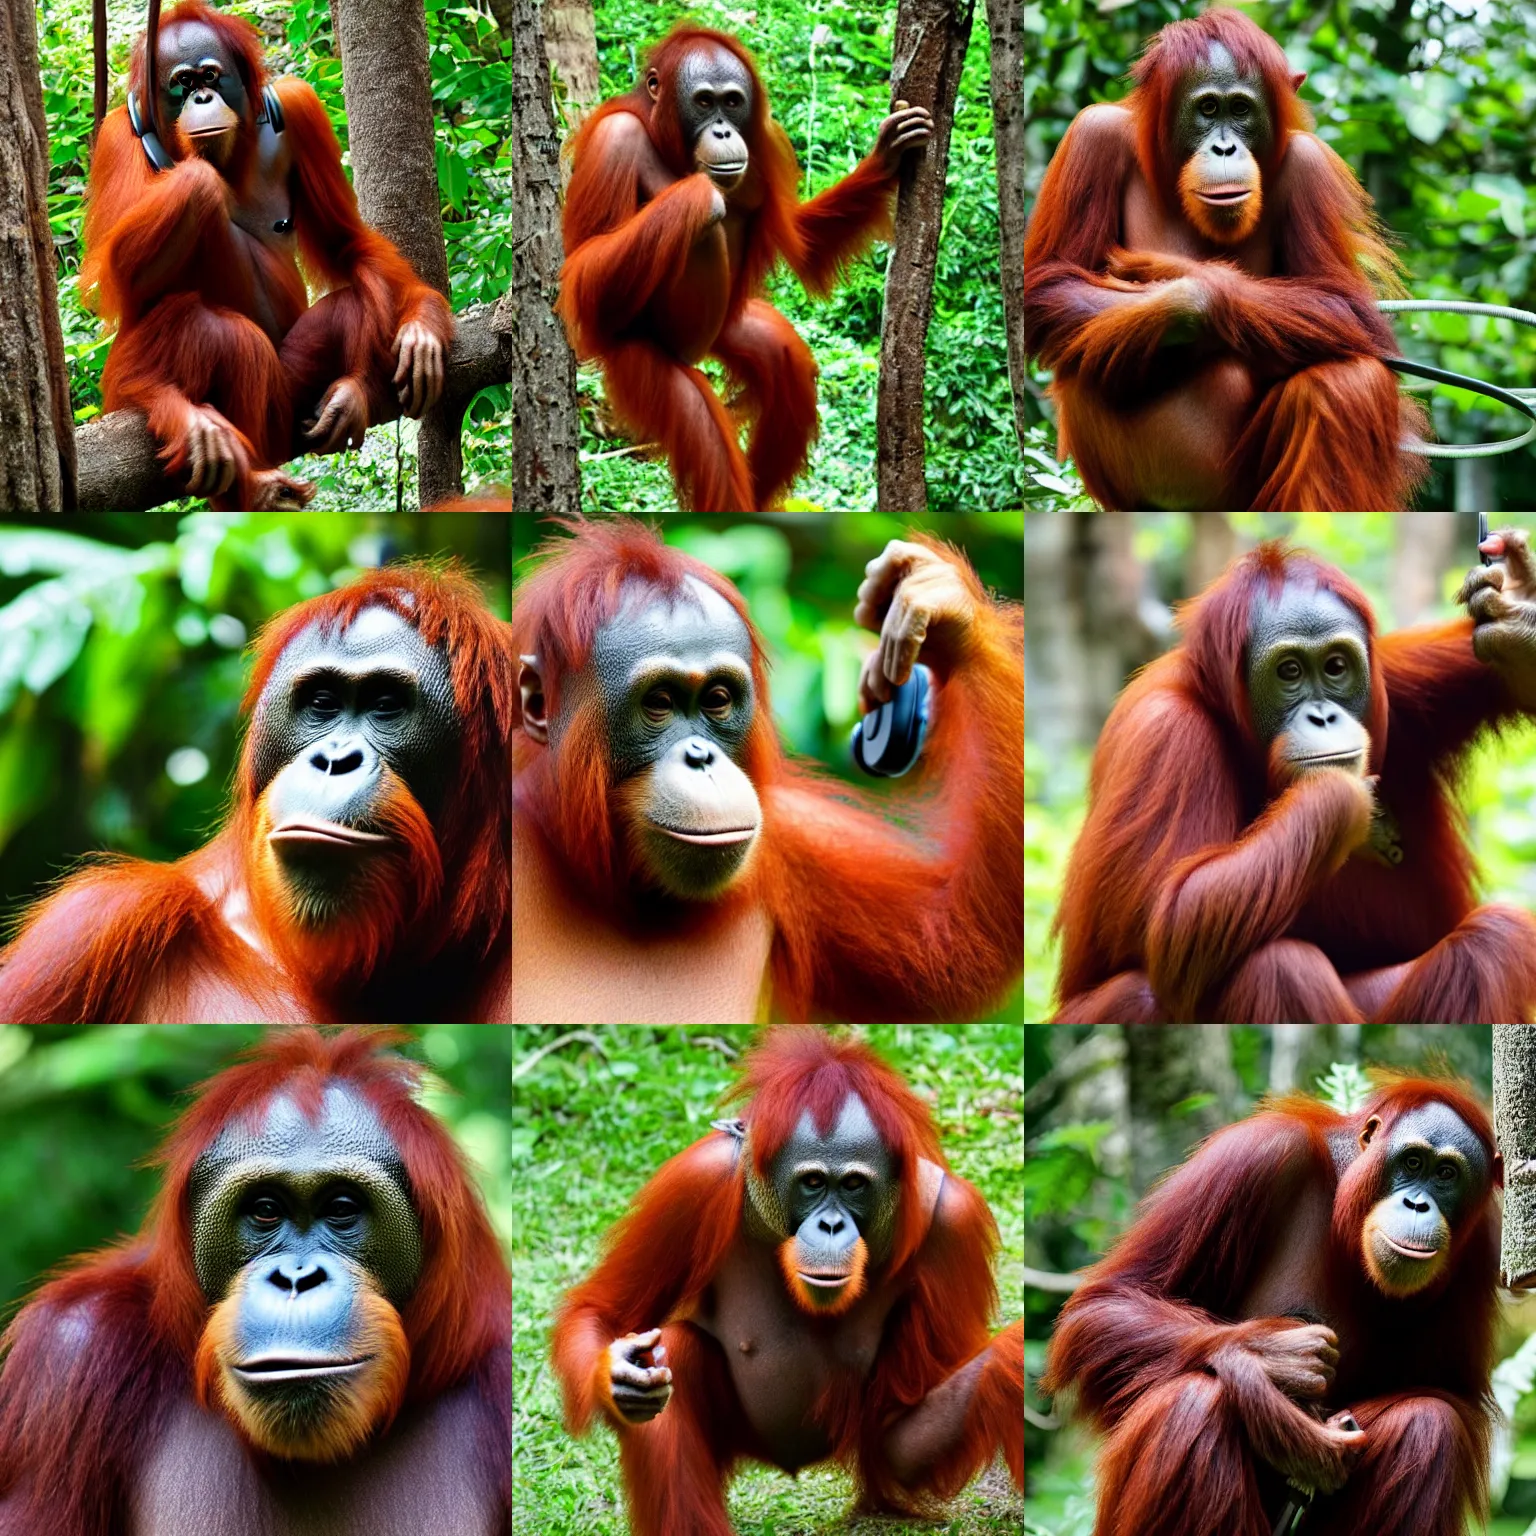 Prompt: an orangutan with headphones